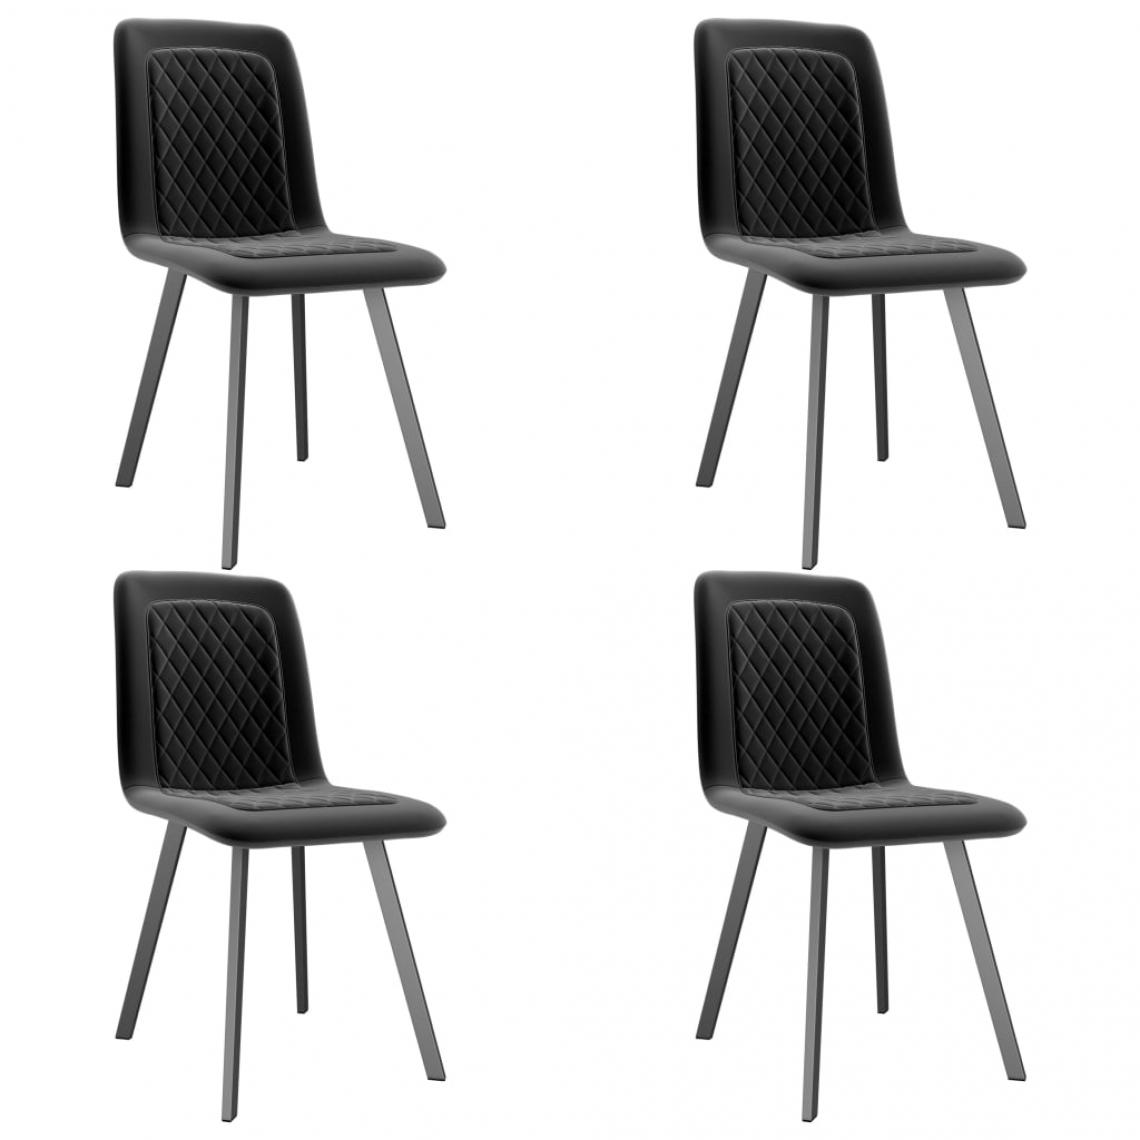 Decoshop26 - Lot de 4 chaises de salle à manger cuisine design moderne velours noir CDS021868 - Chaises